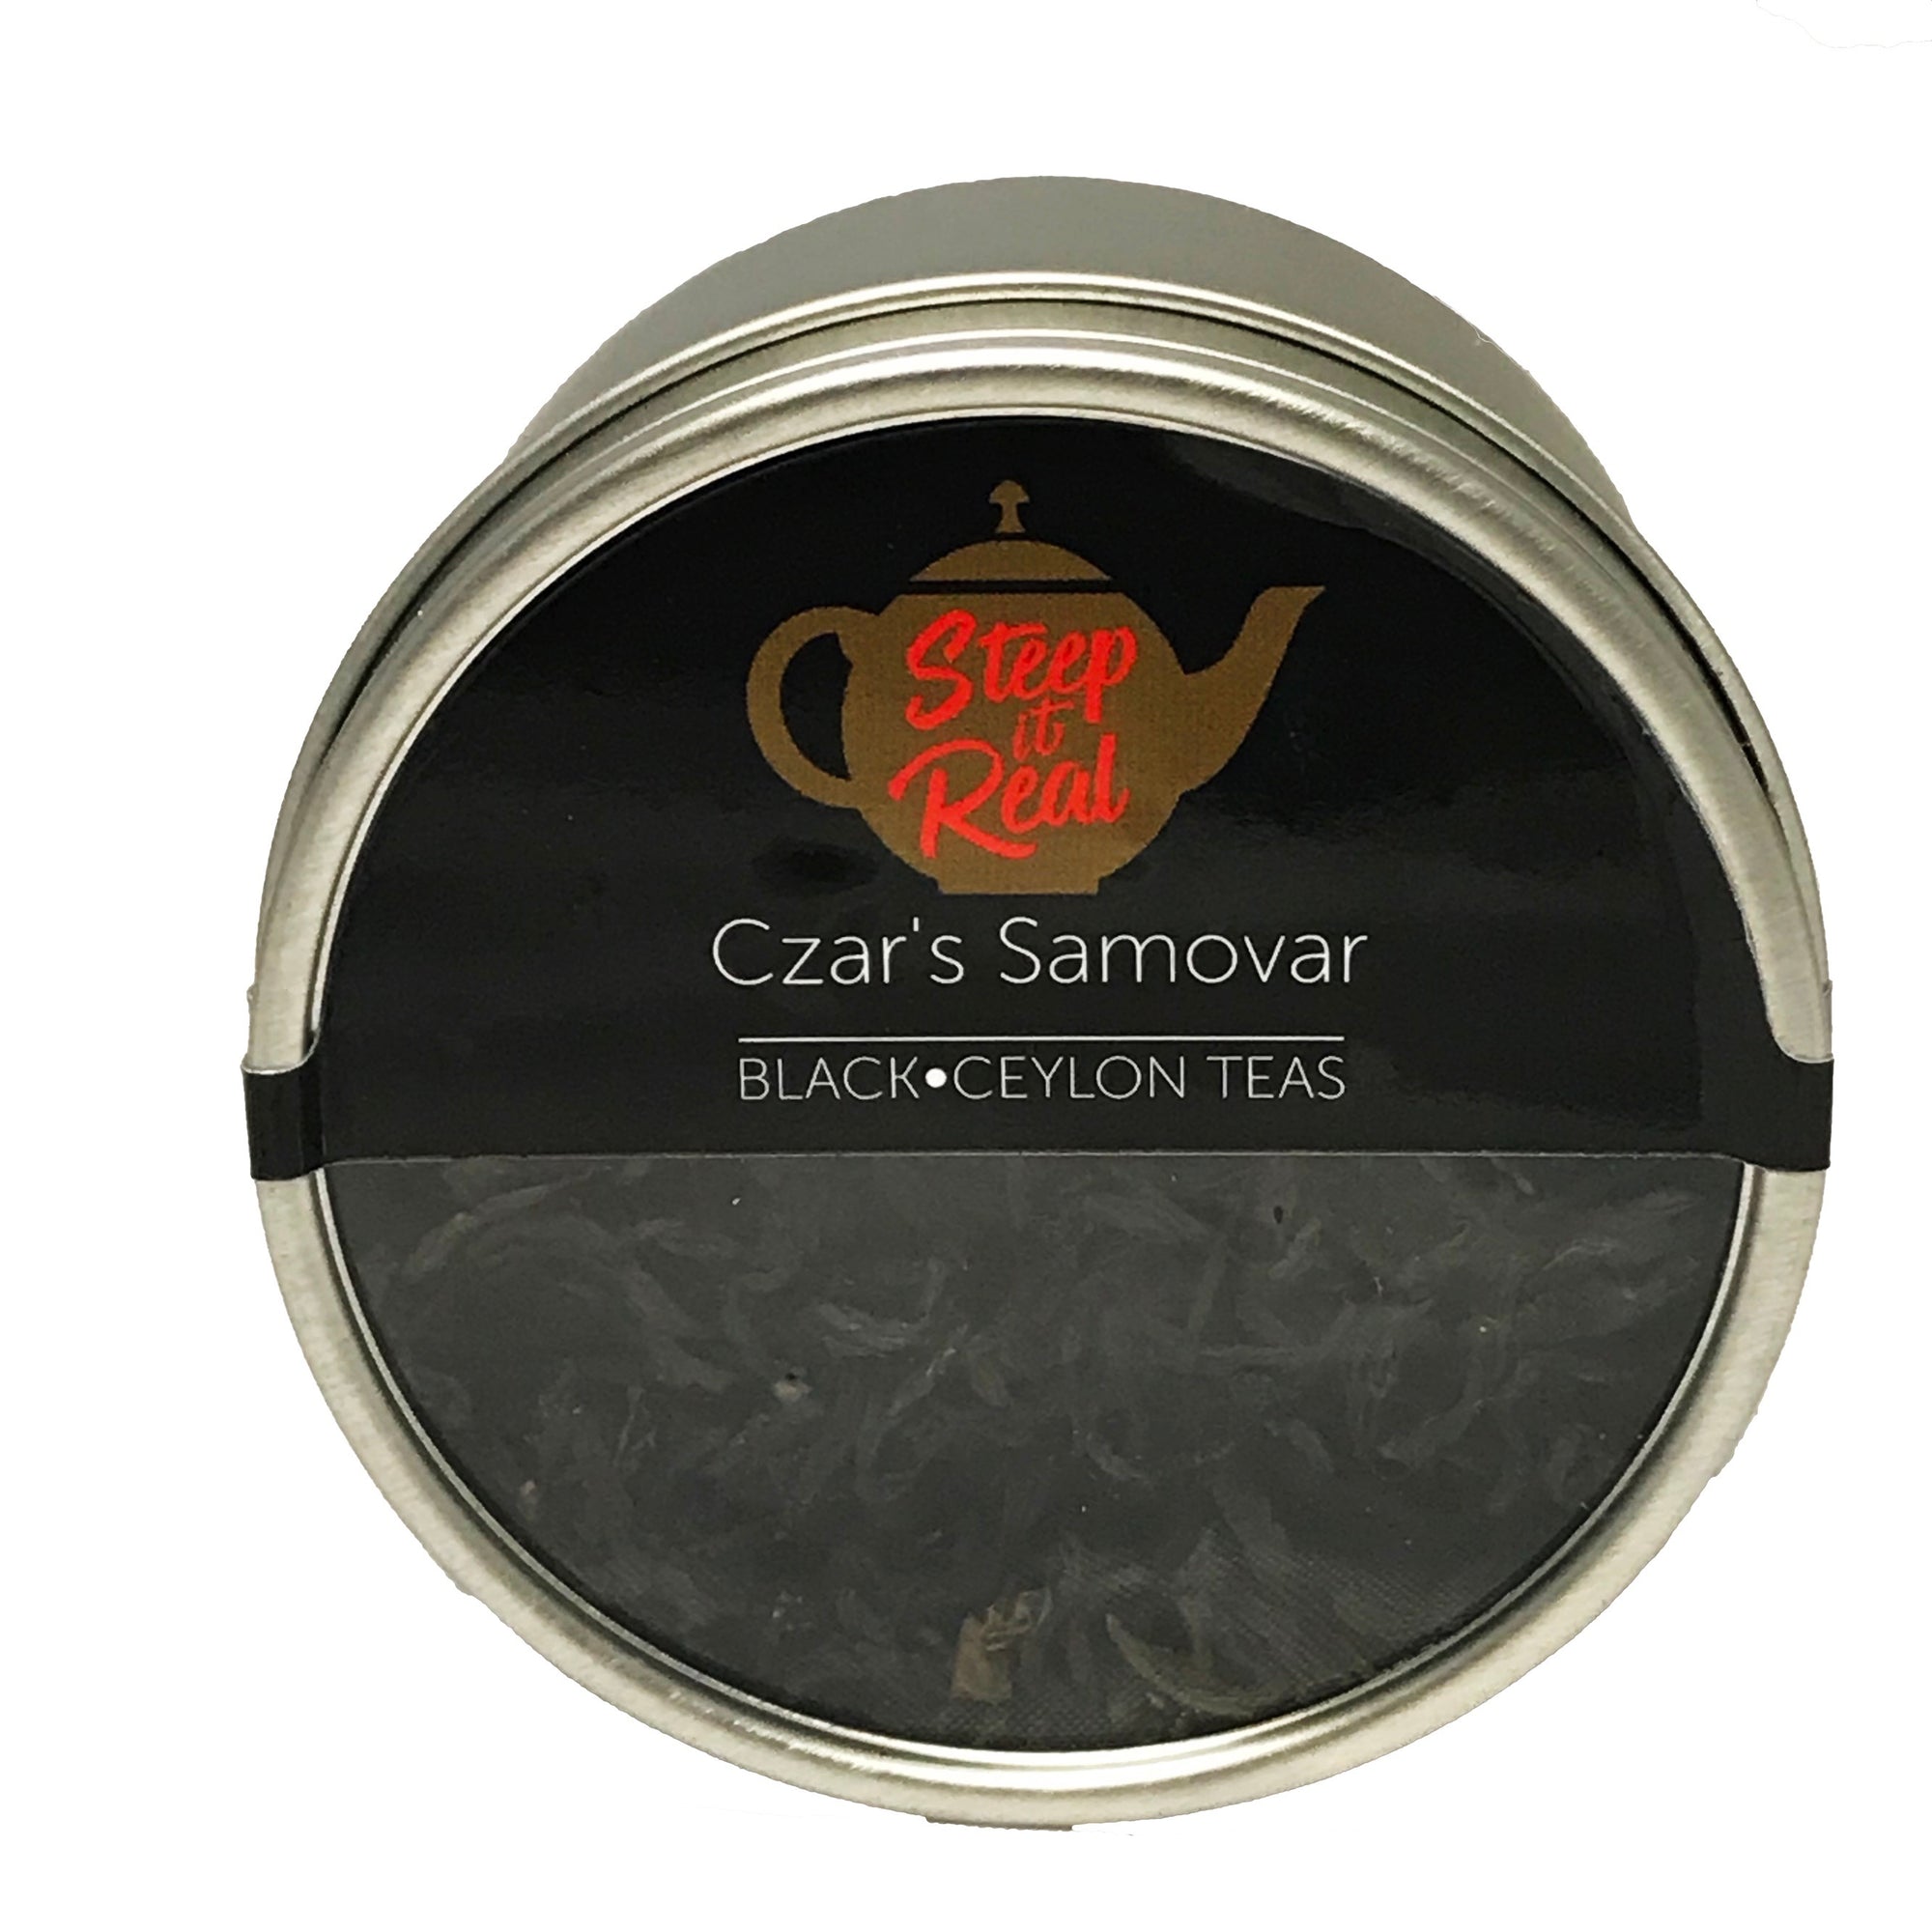 Czar's Samovar - I Have a Bean